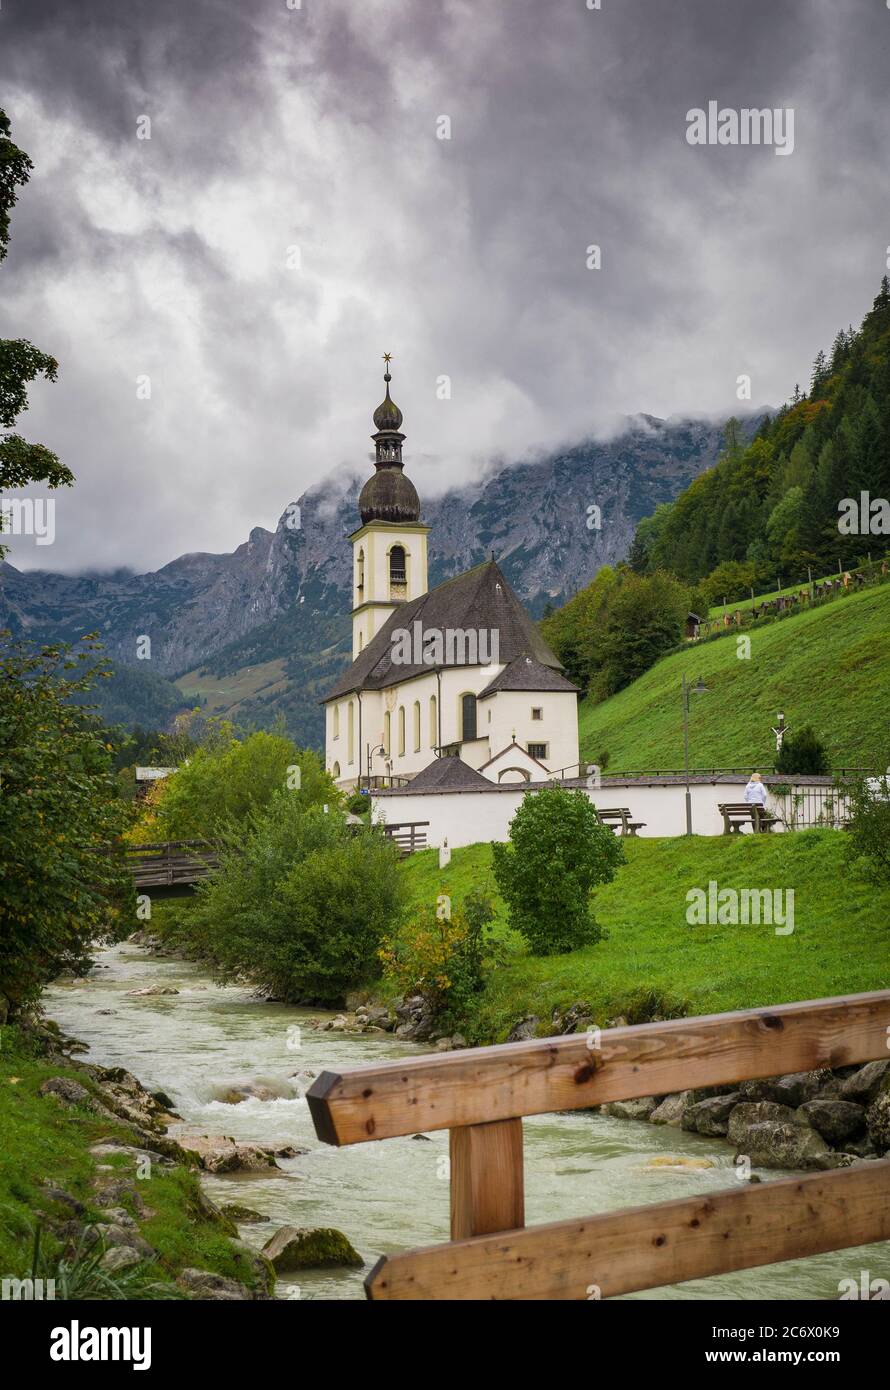 El famoso curch en Ramsau, Berchtesgaden Foto de stock